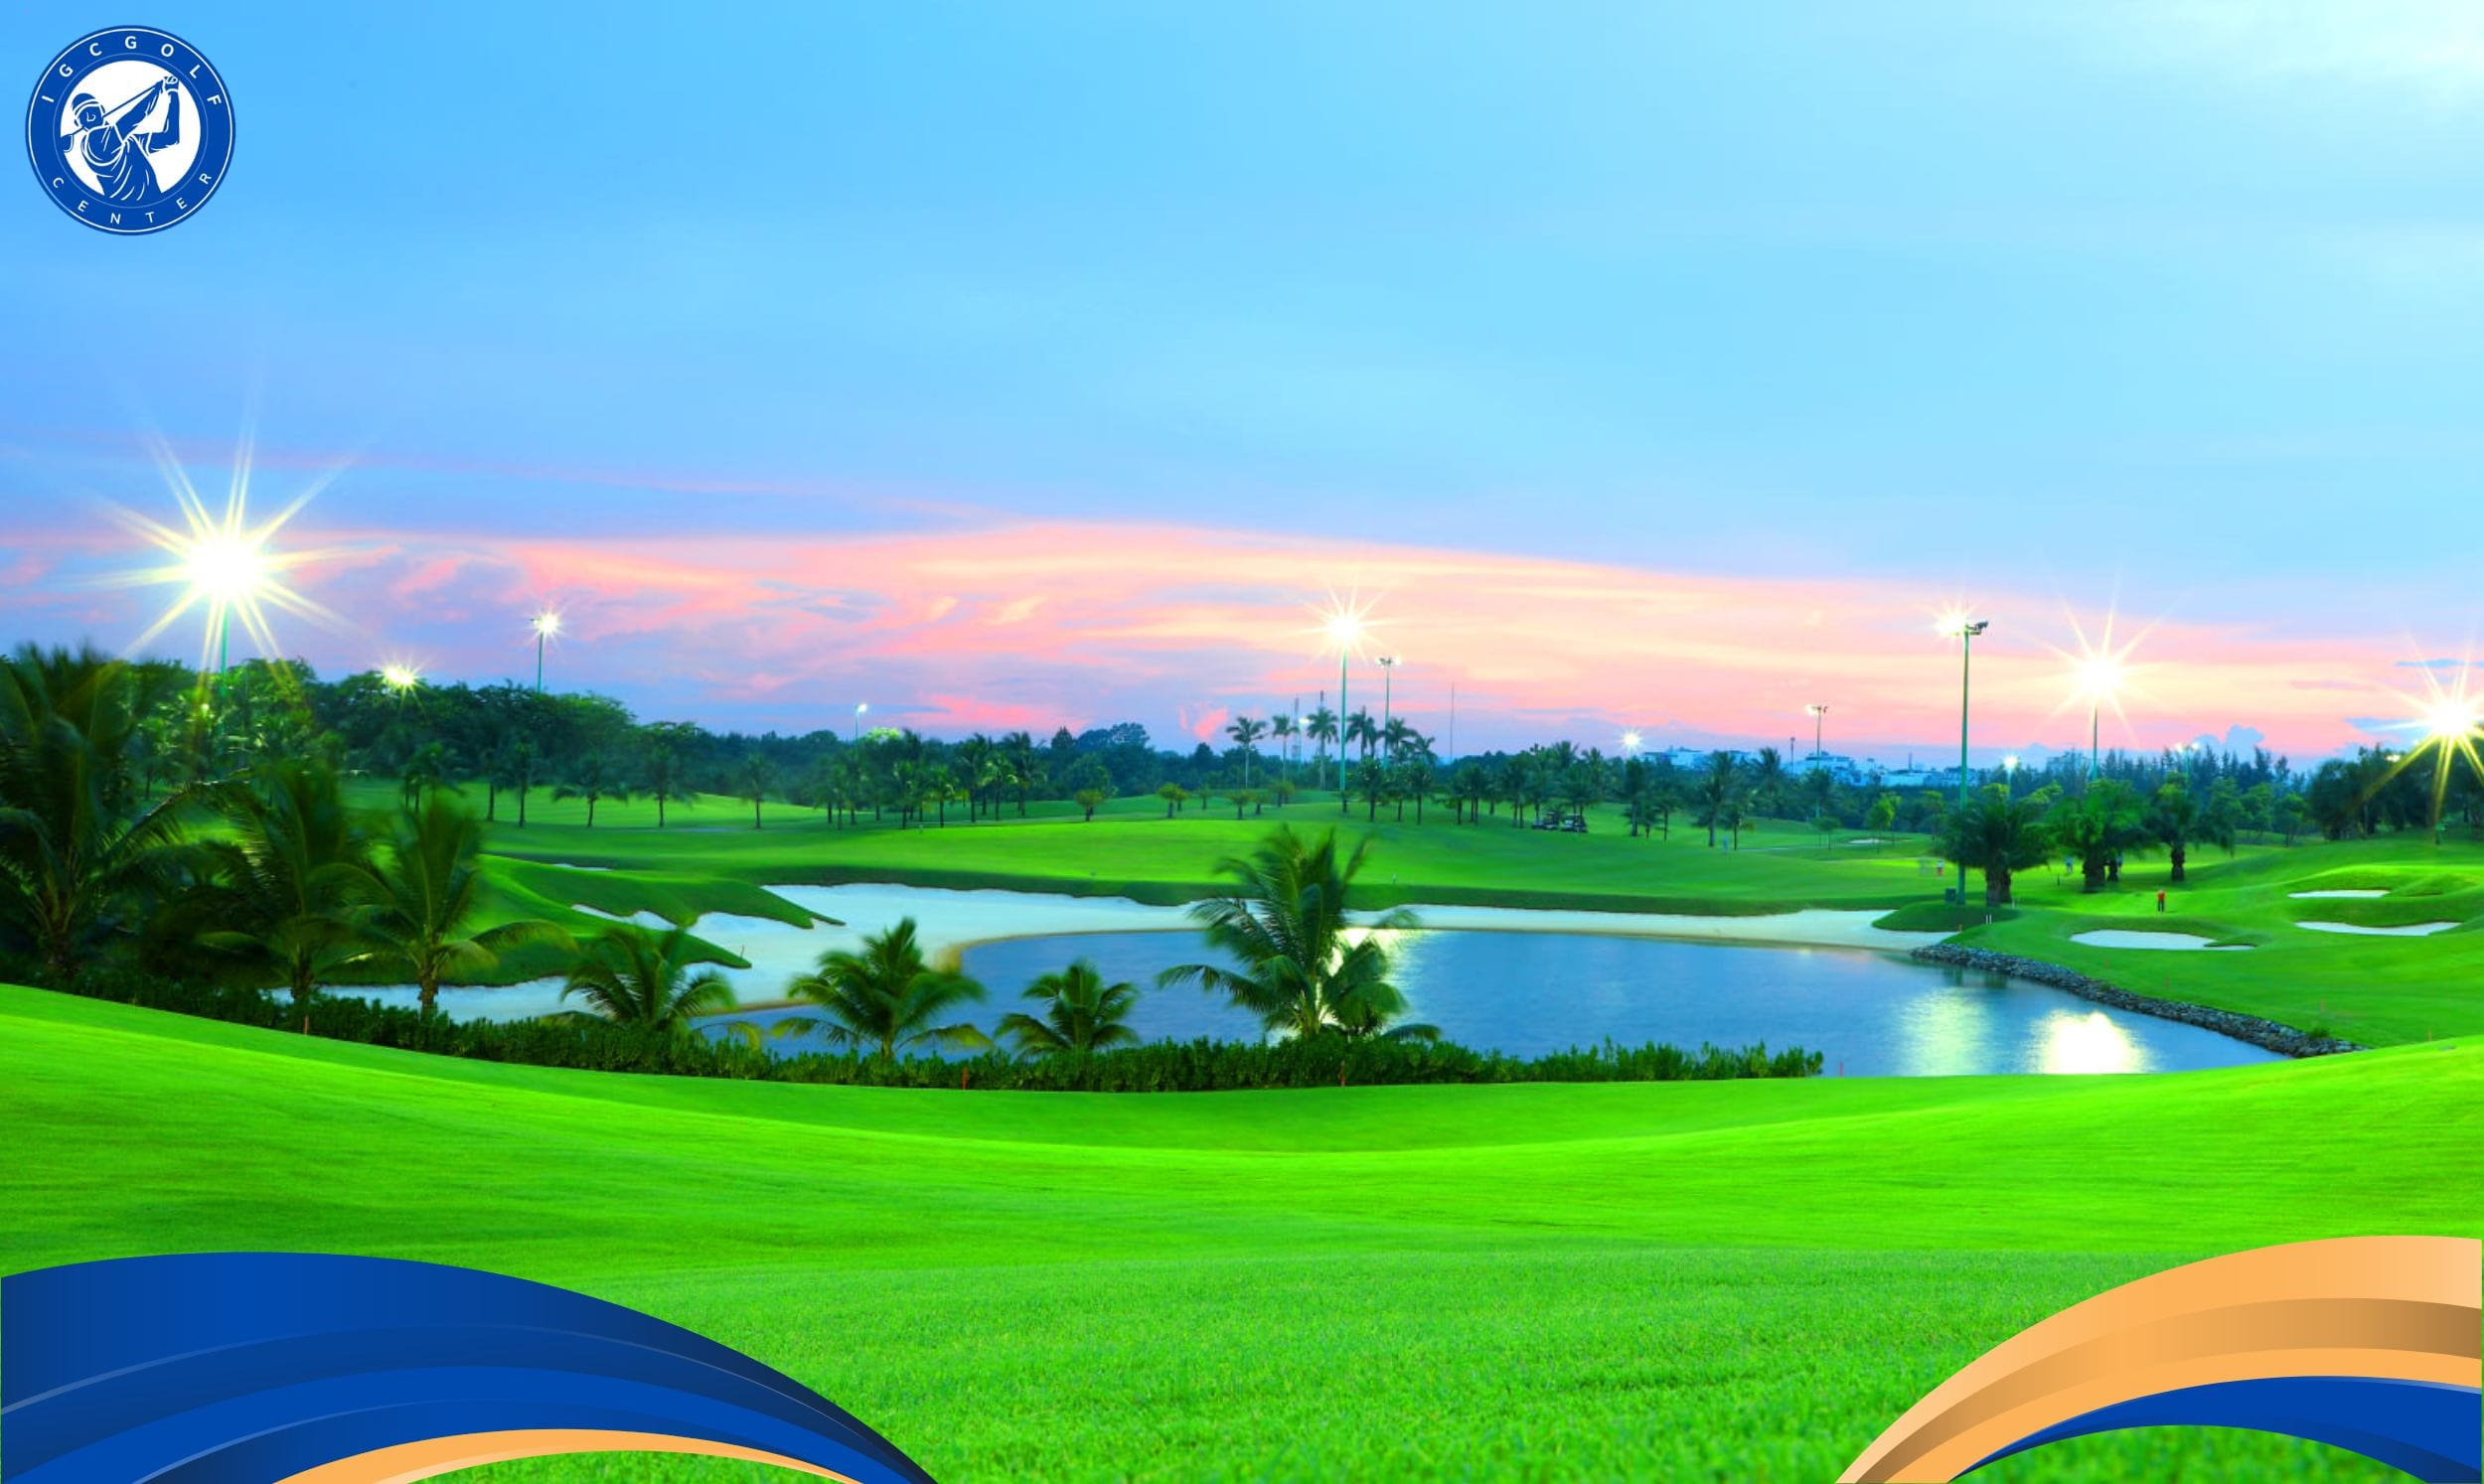 Ưu điểm khi chọn các khóa học golf ở Hà Đông tại IGC Golf Center